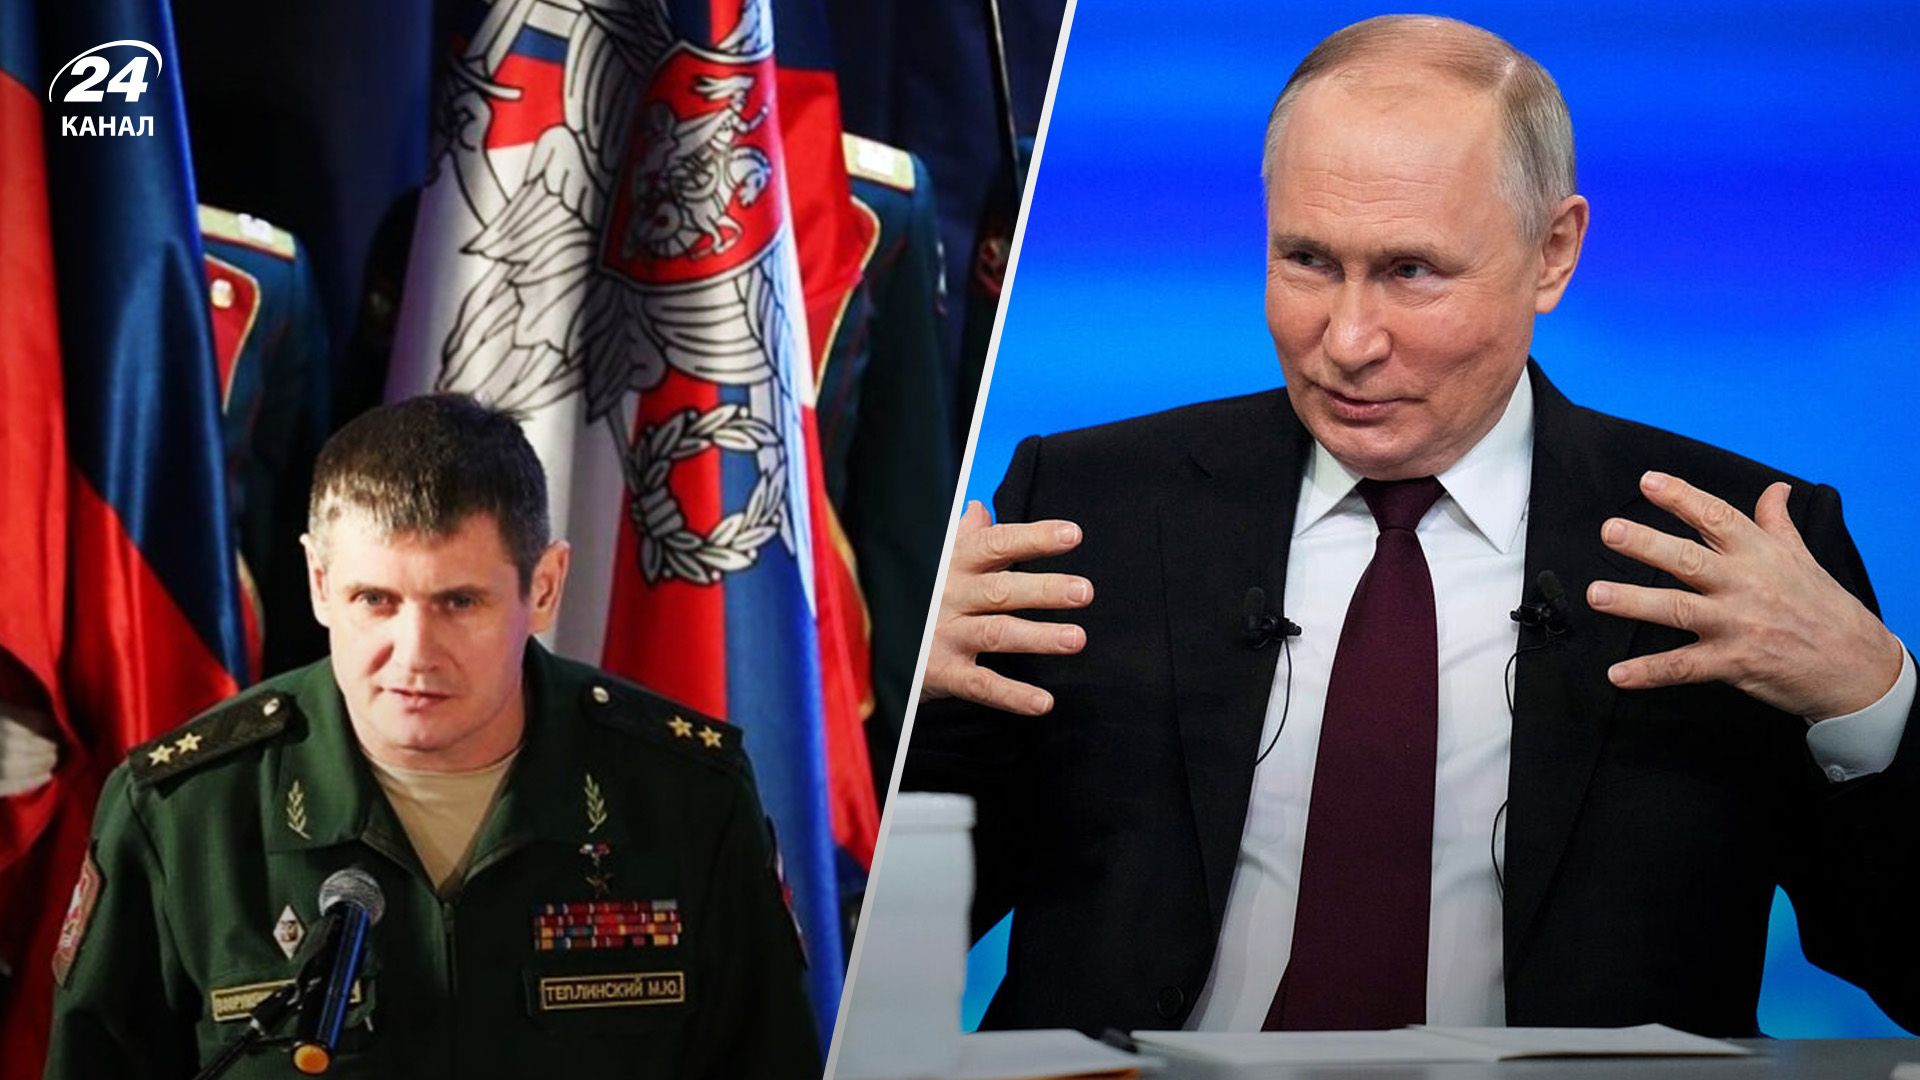 Заявления Теплинского лишь подтверждают проблемы российской армии